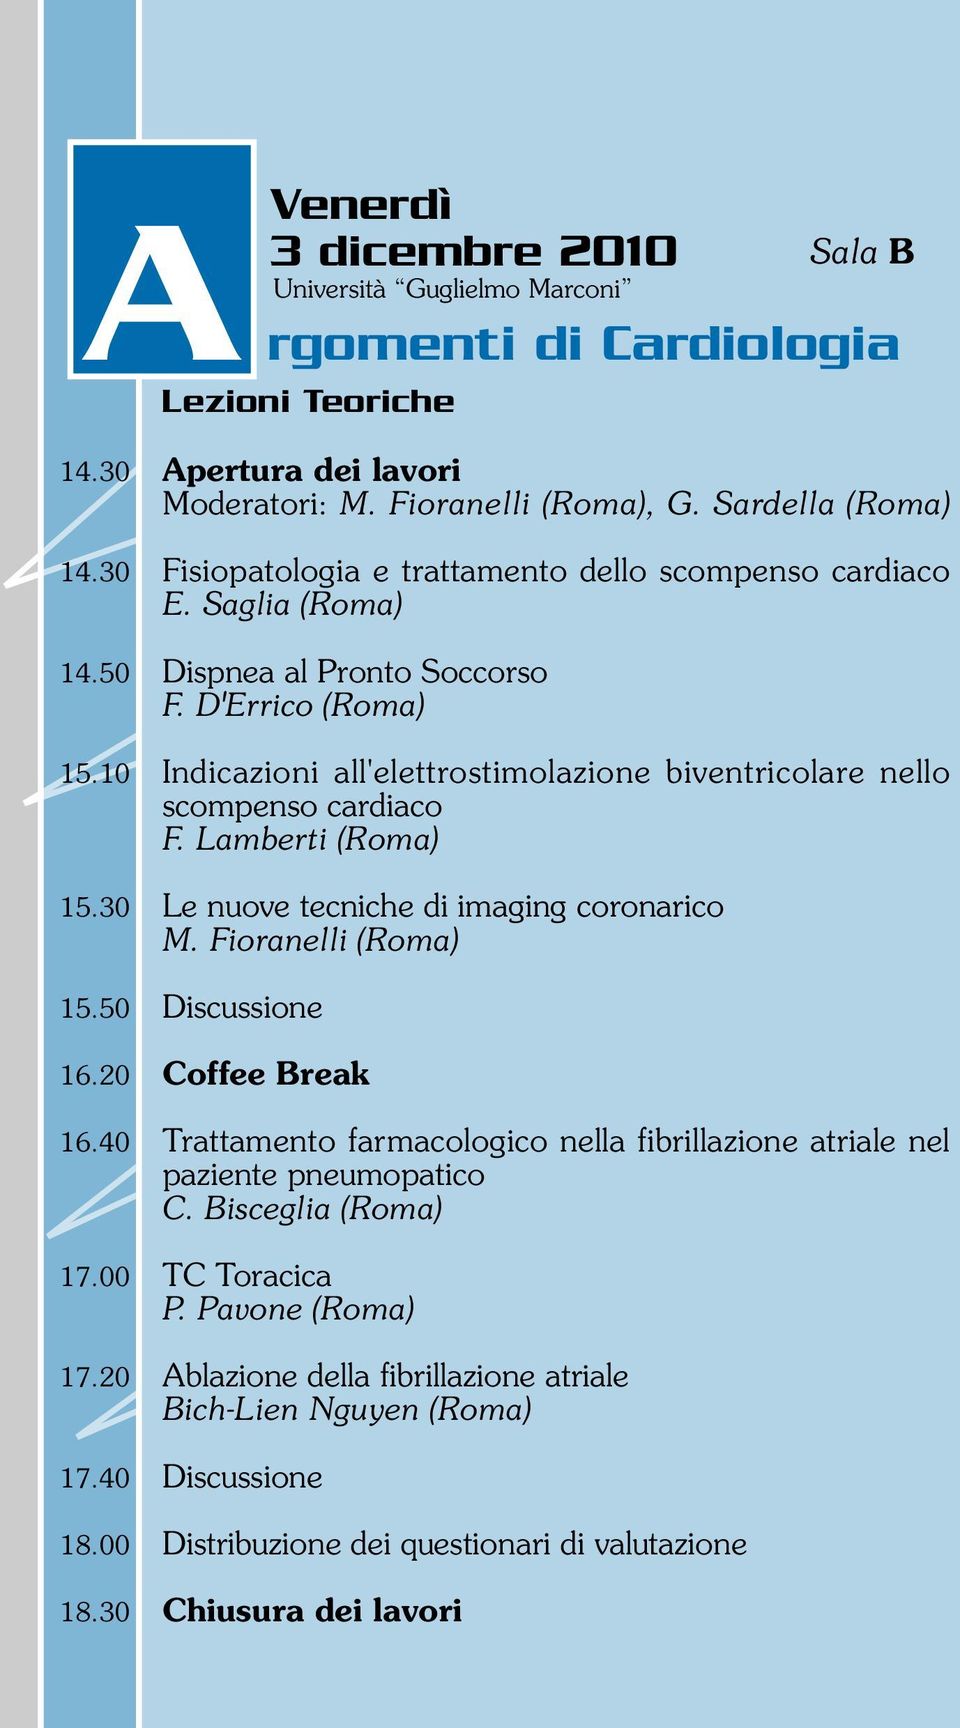 10 Indicazioni all'elettrostimolazione biventricolare nello scompenso cardiaco F. Lamberti (Roma) 15.30 Le nuove tecniche di imaging coronarico M. Fioranelli (Roma) 15.50 Discussione 16.